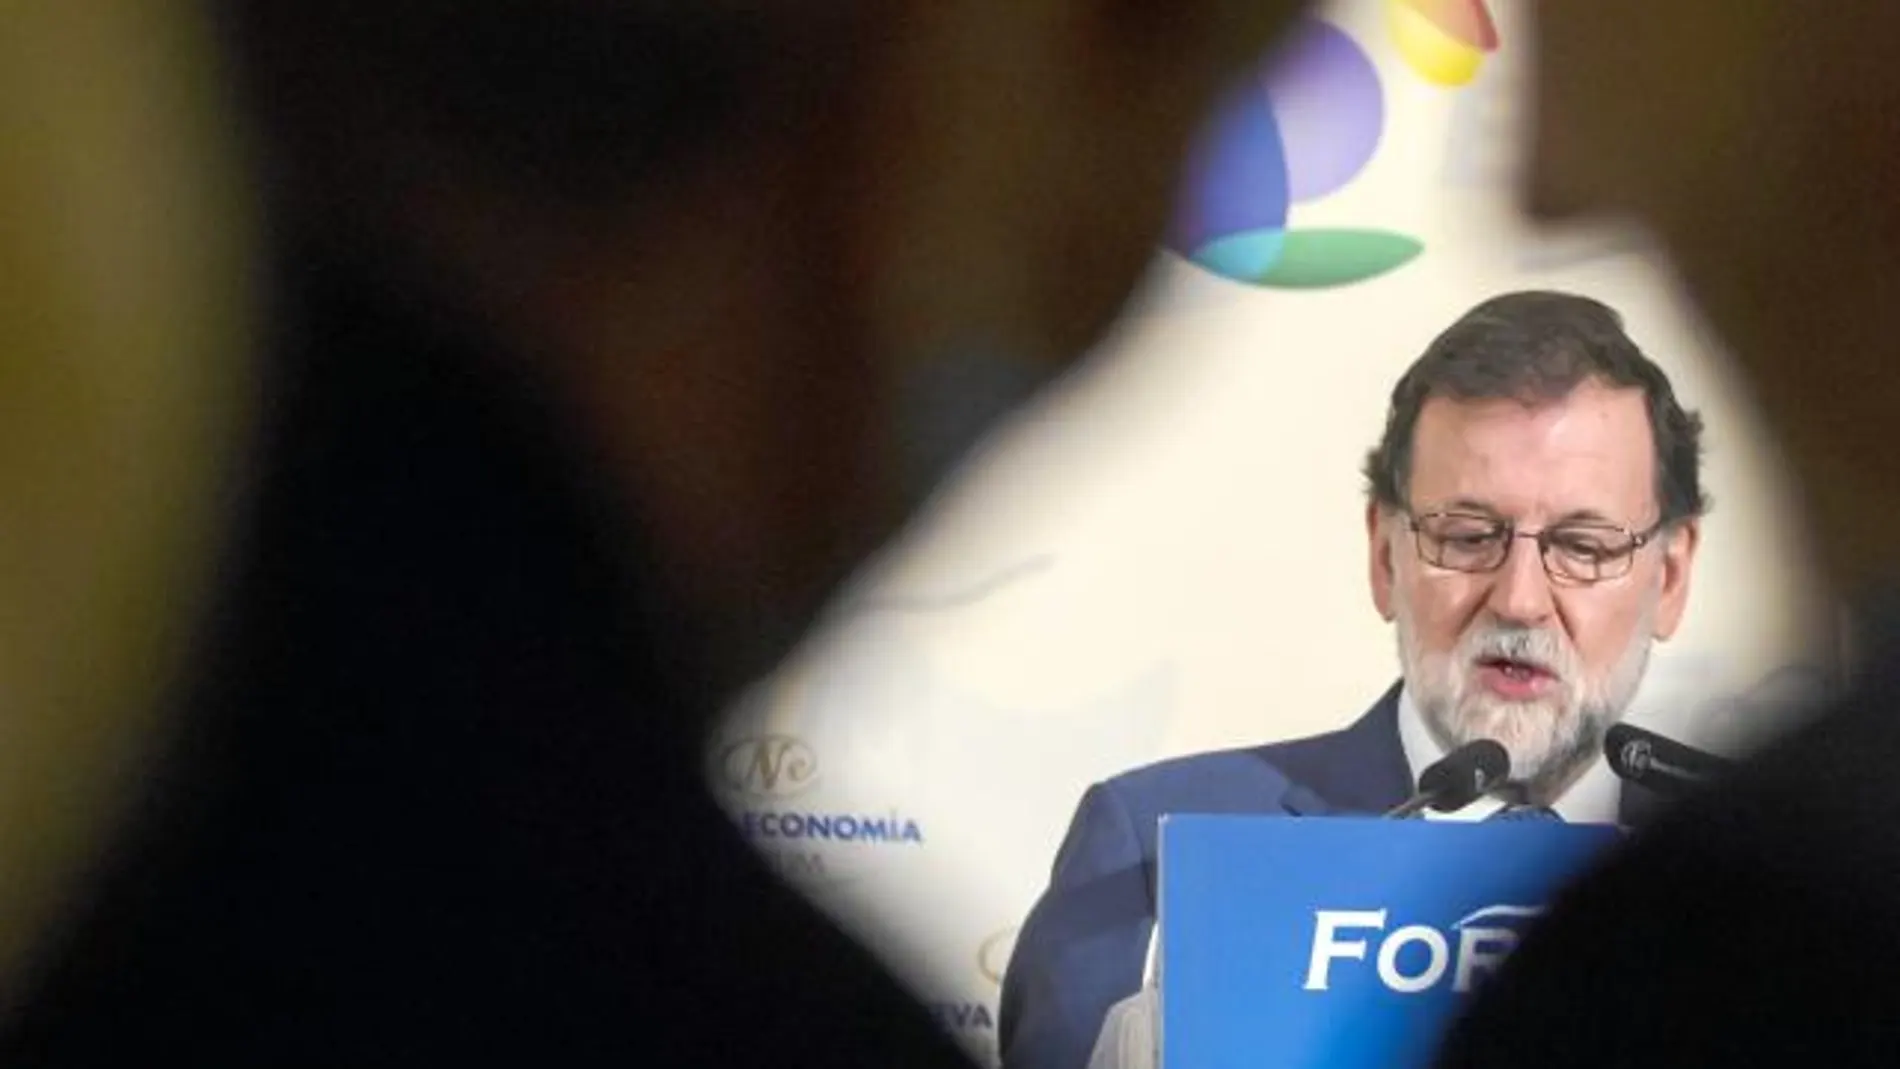 Cristina Cifuentes y Pablo Casado conversan con Rajoy al fondo